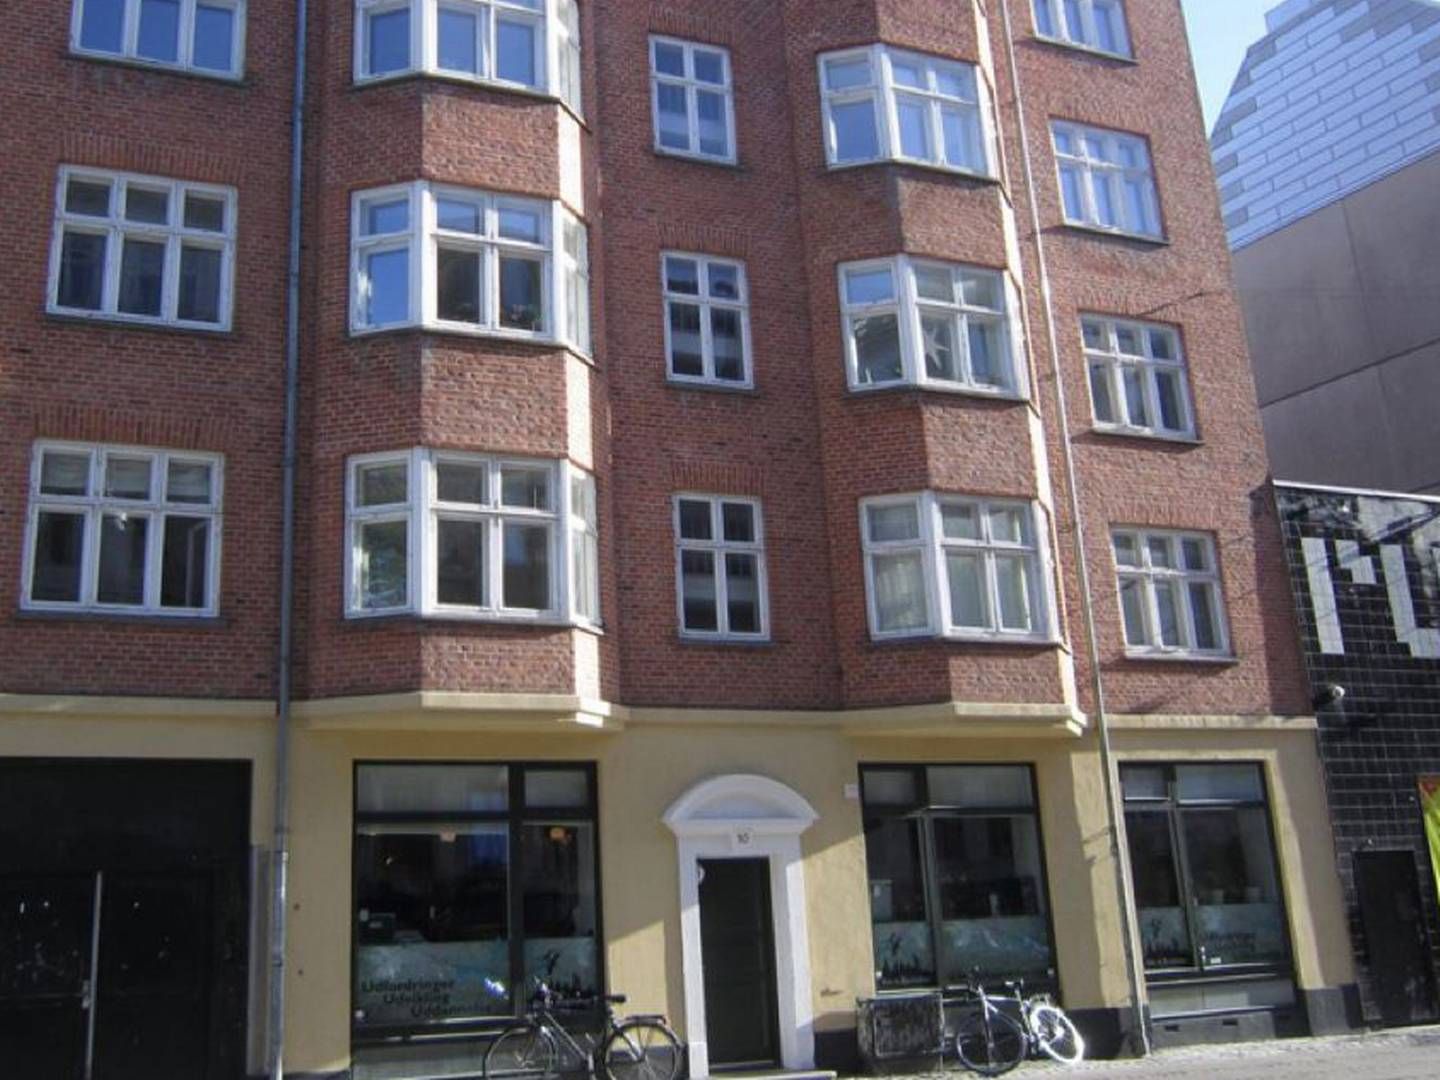 Ejendommen på Guldbergsgade har i dag café i stueetagen og er desuden nabo til spillestedet og natklubben Rust. | Foto: PR